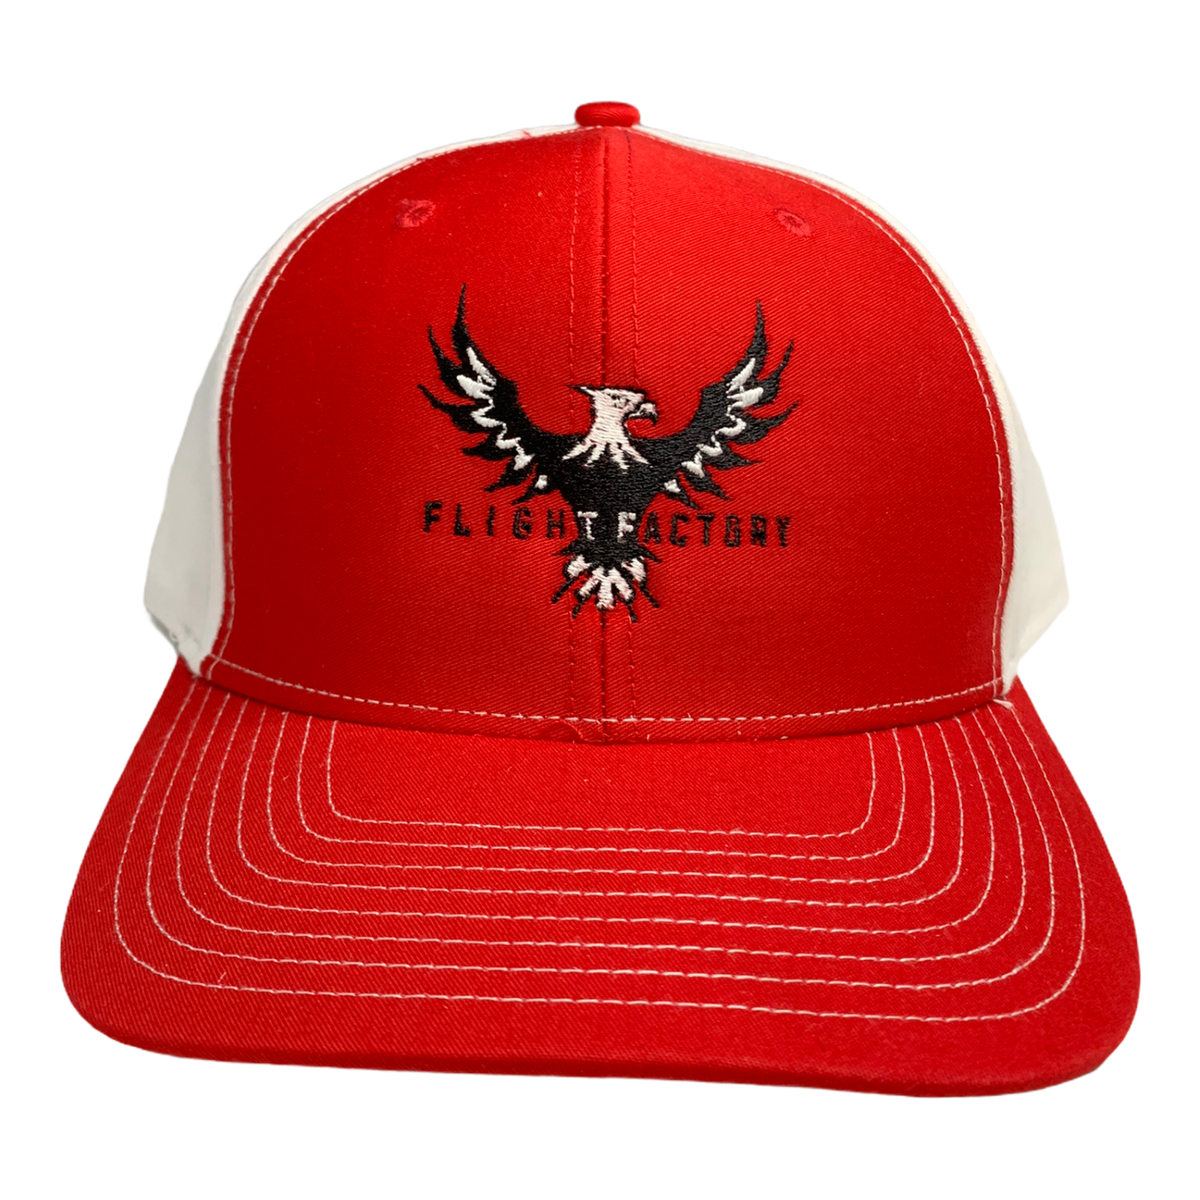 Flight Factory Twill Back Snapback Hat